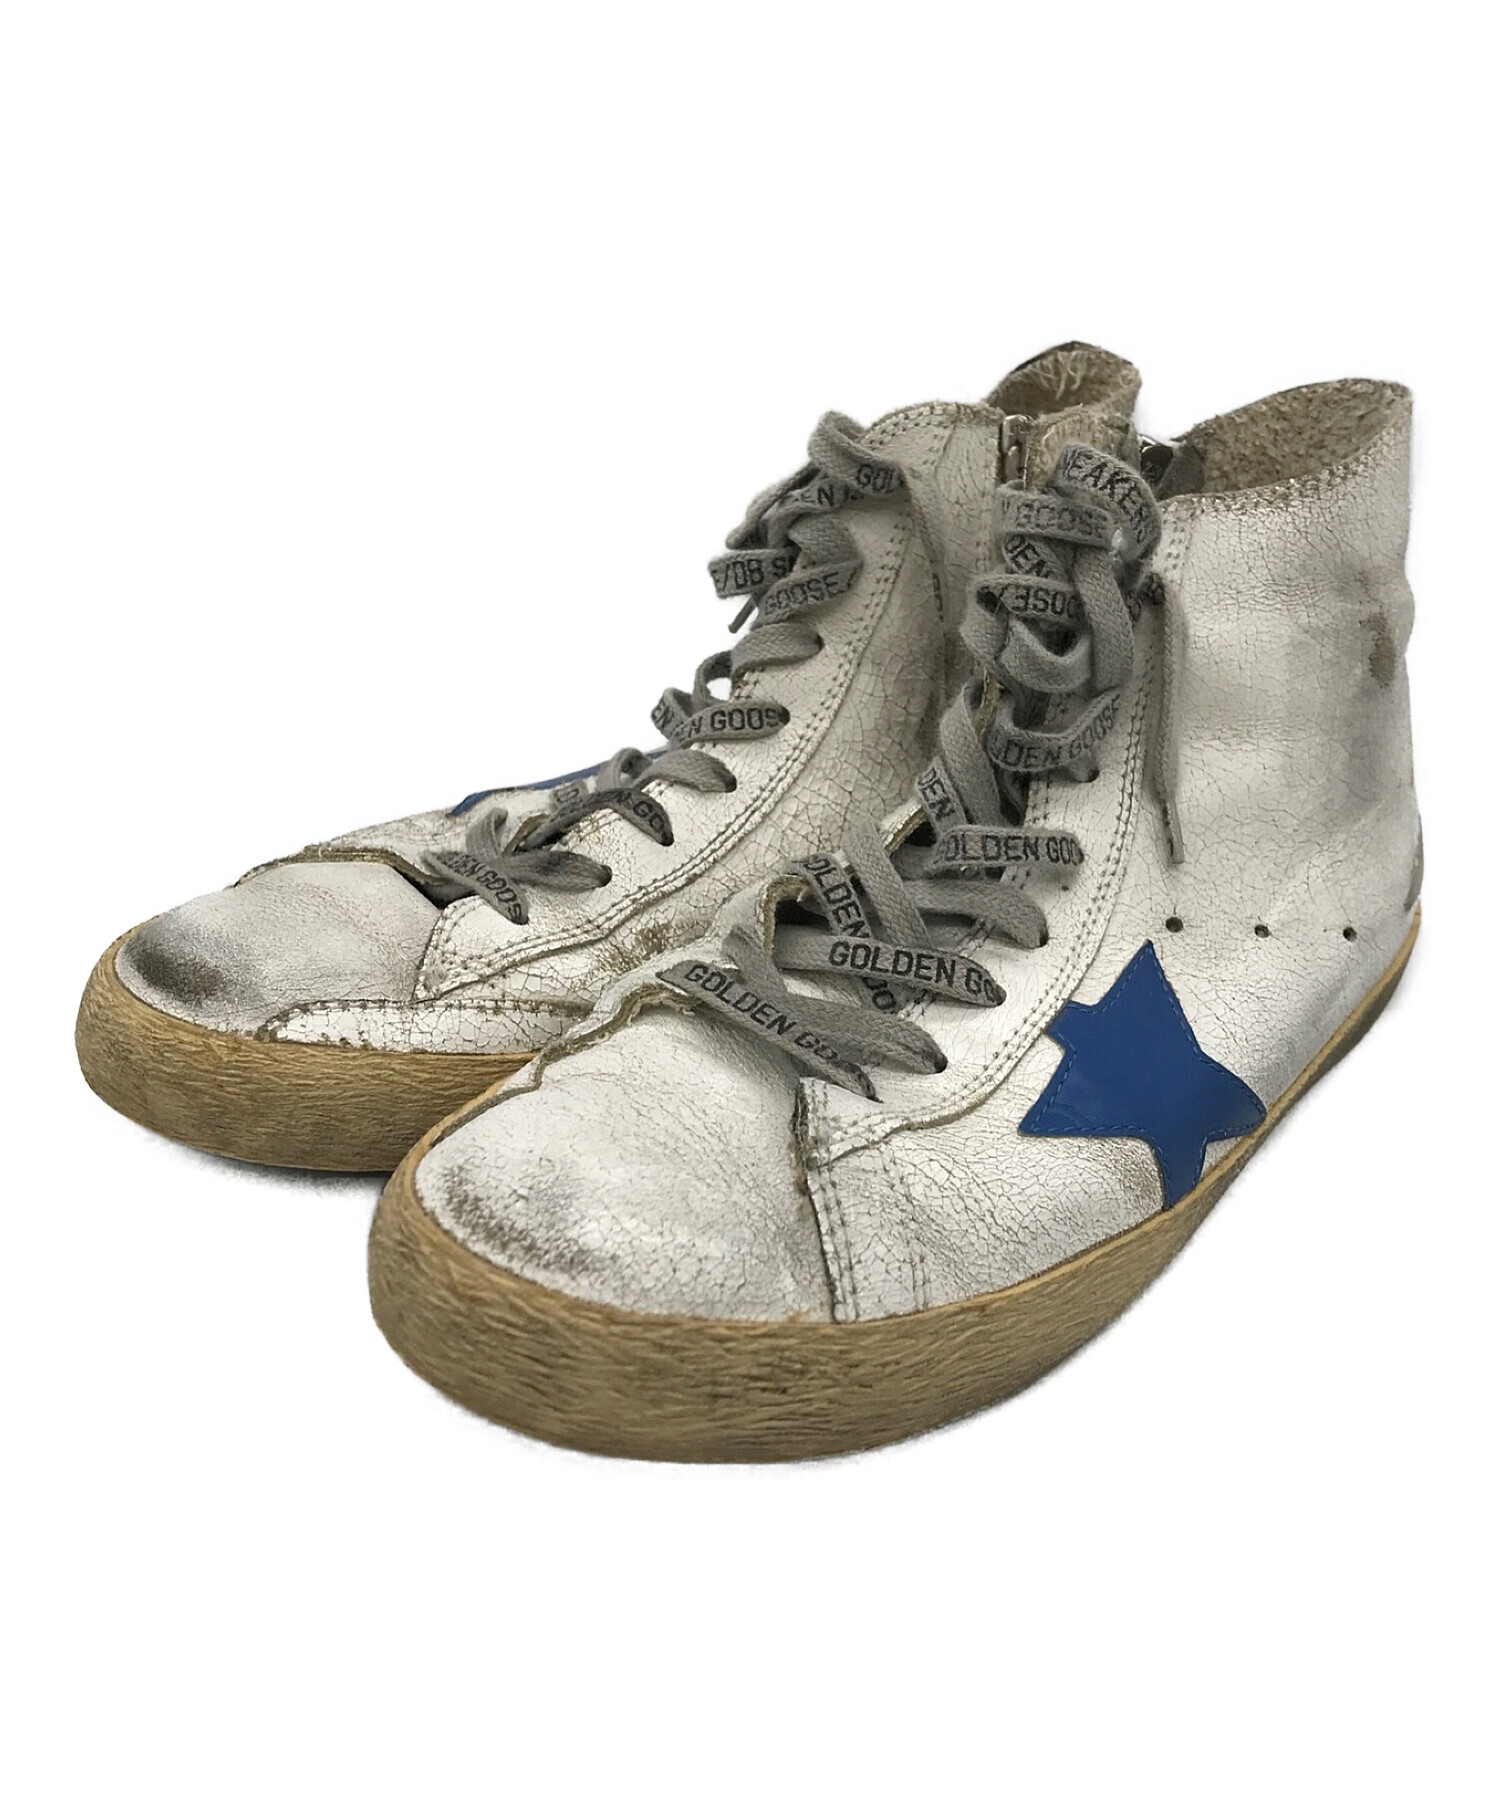 ゴールデングースのハイカットスニーカー靴